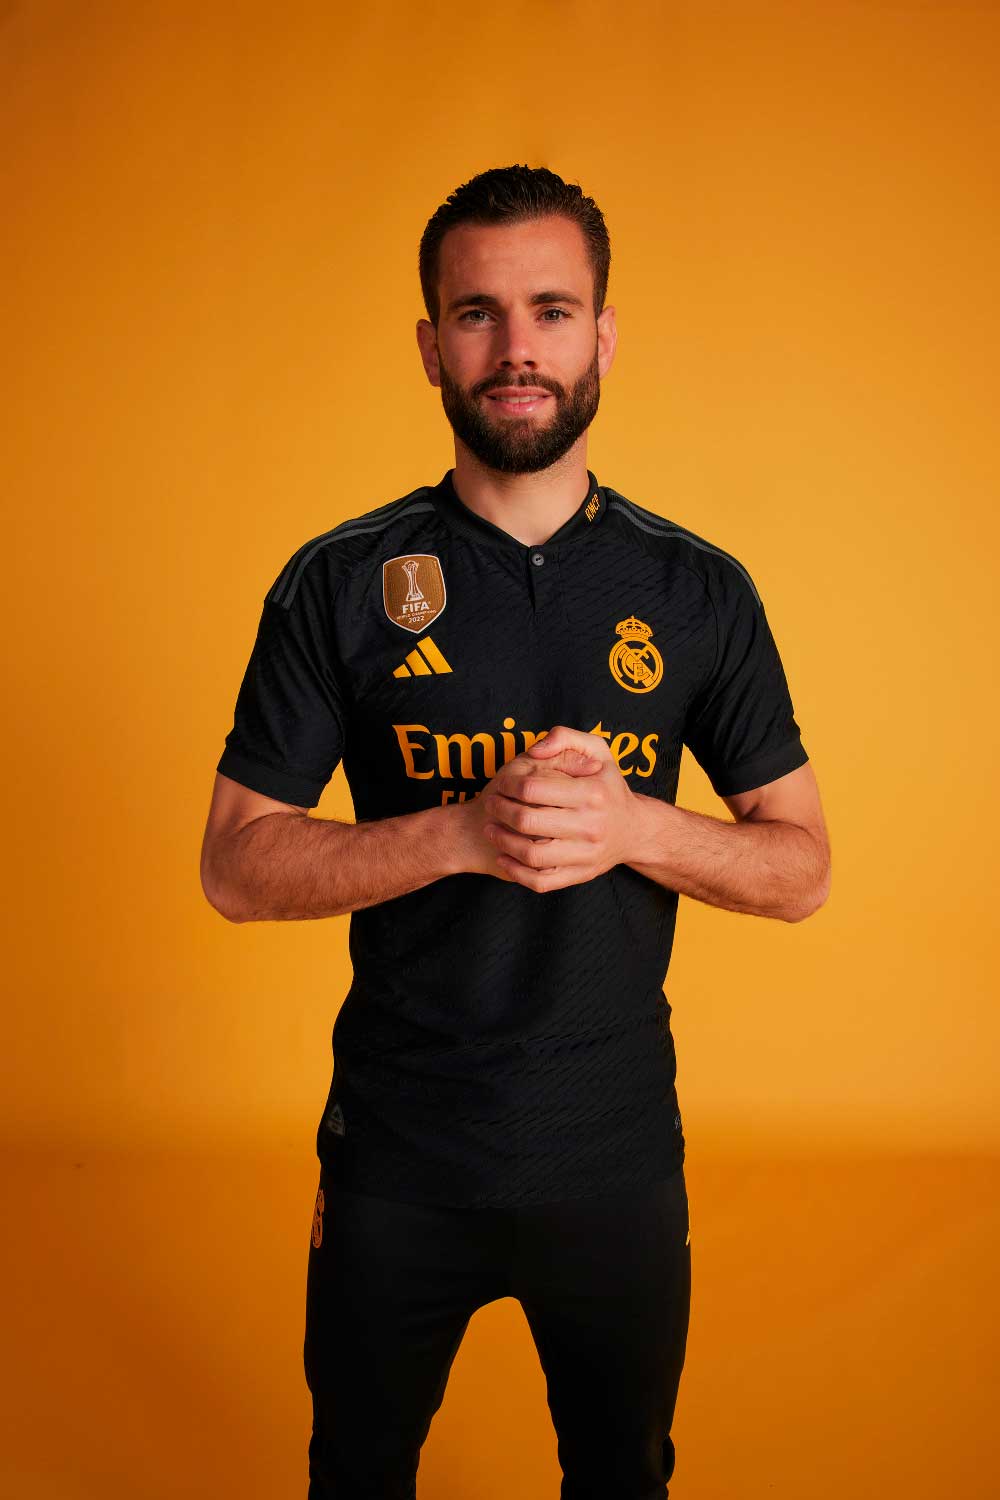 El nuevo uniforme del Real Madrid para tu look bloke core